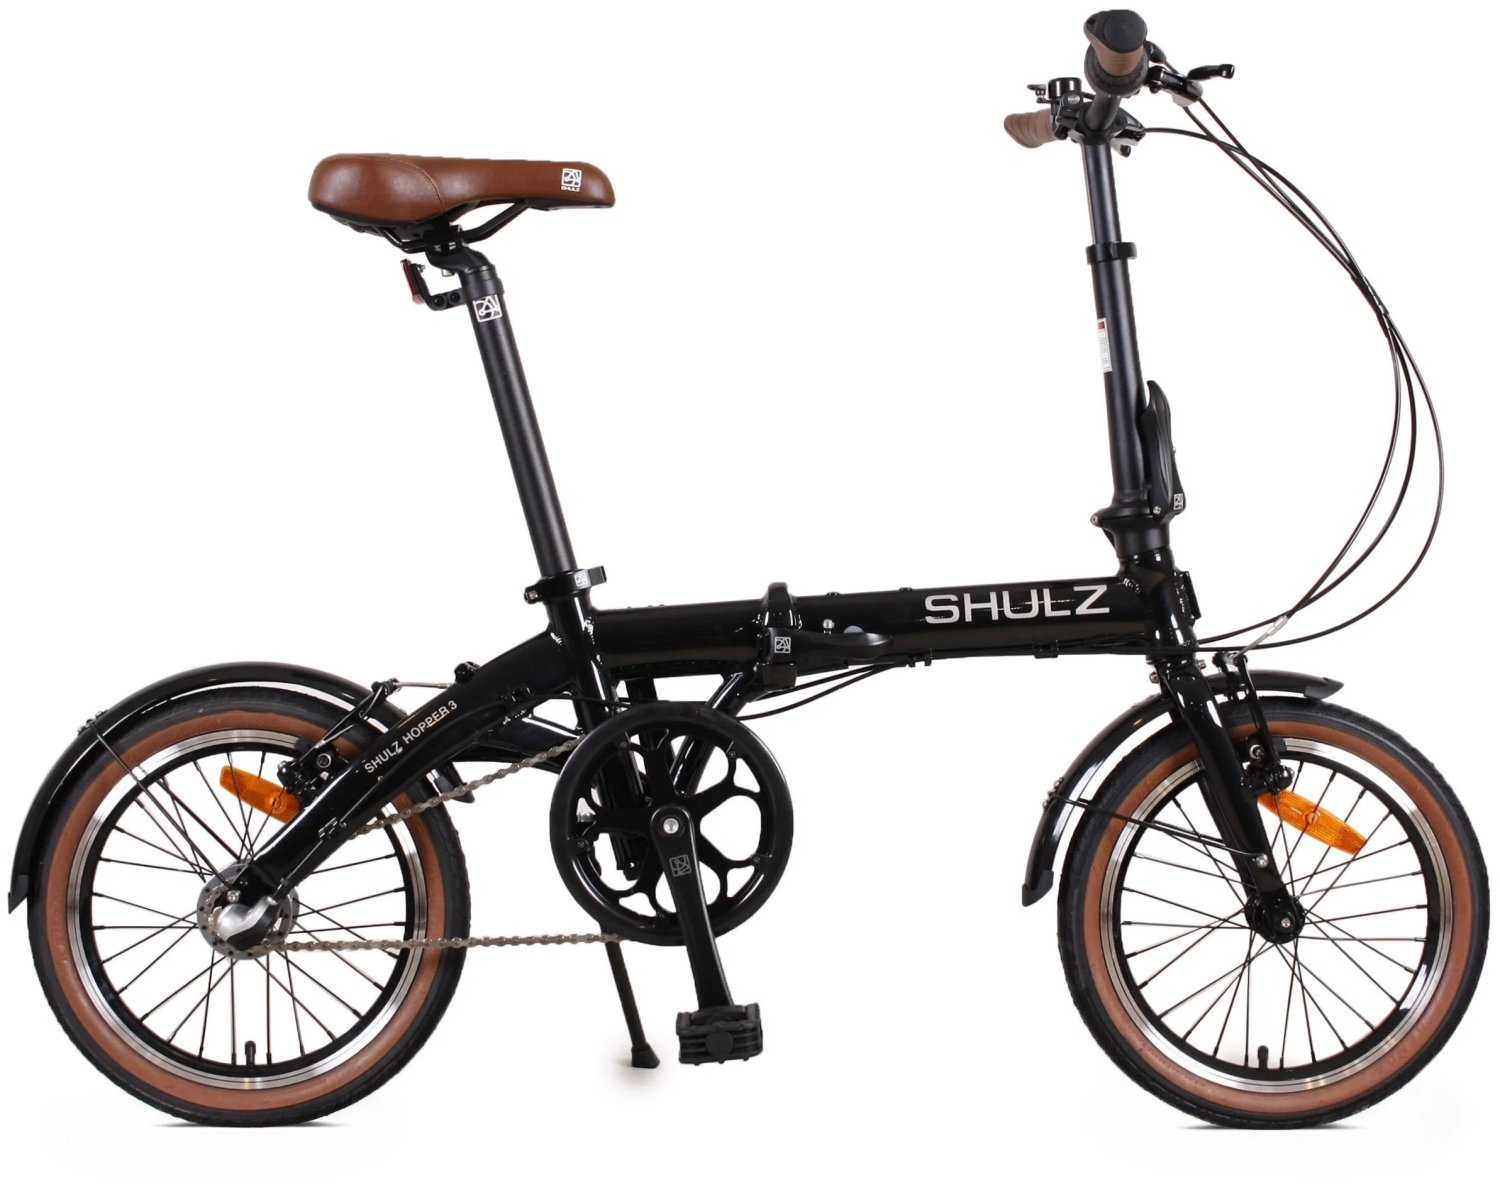 Складной велосипед SHULZ Hopper 3, black/черный YS-768, 2021, 2000008311625 журнал звезда 1 2021